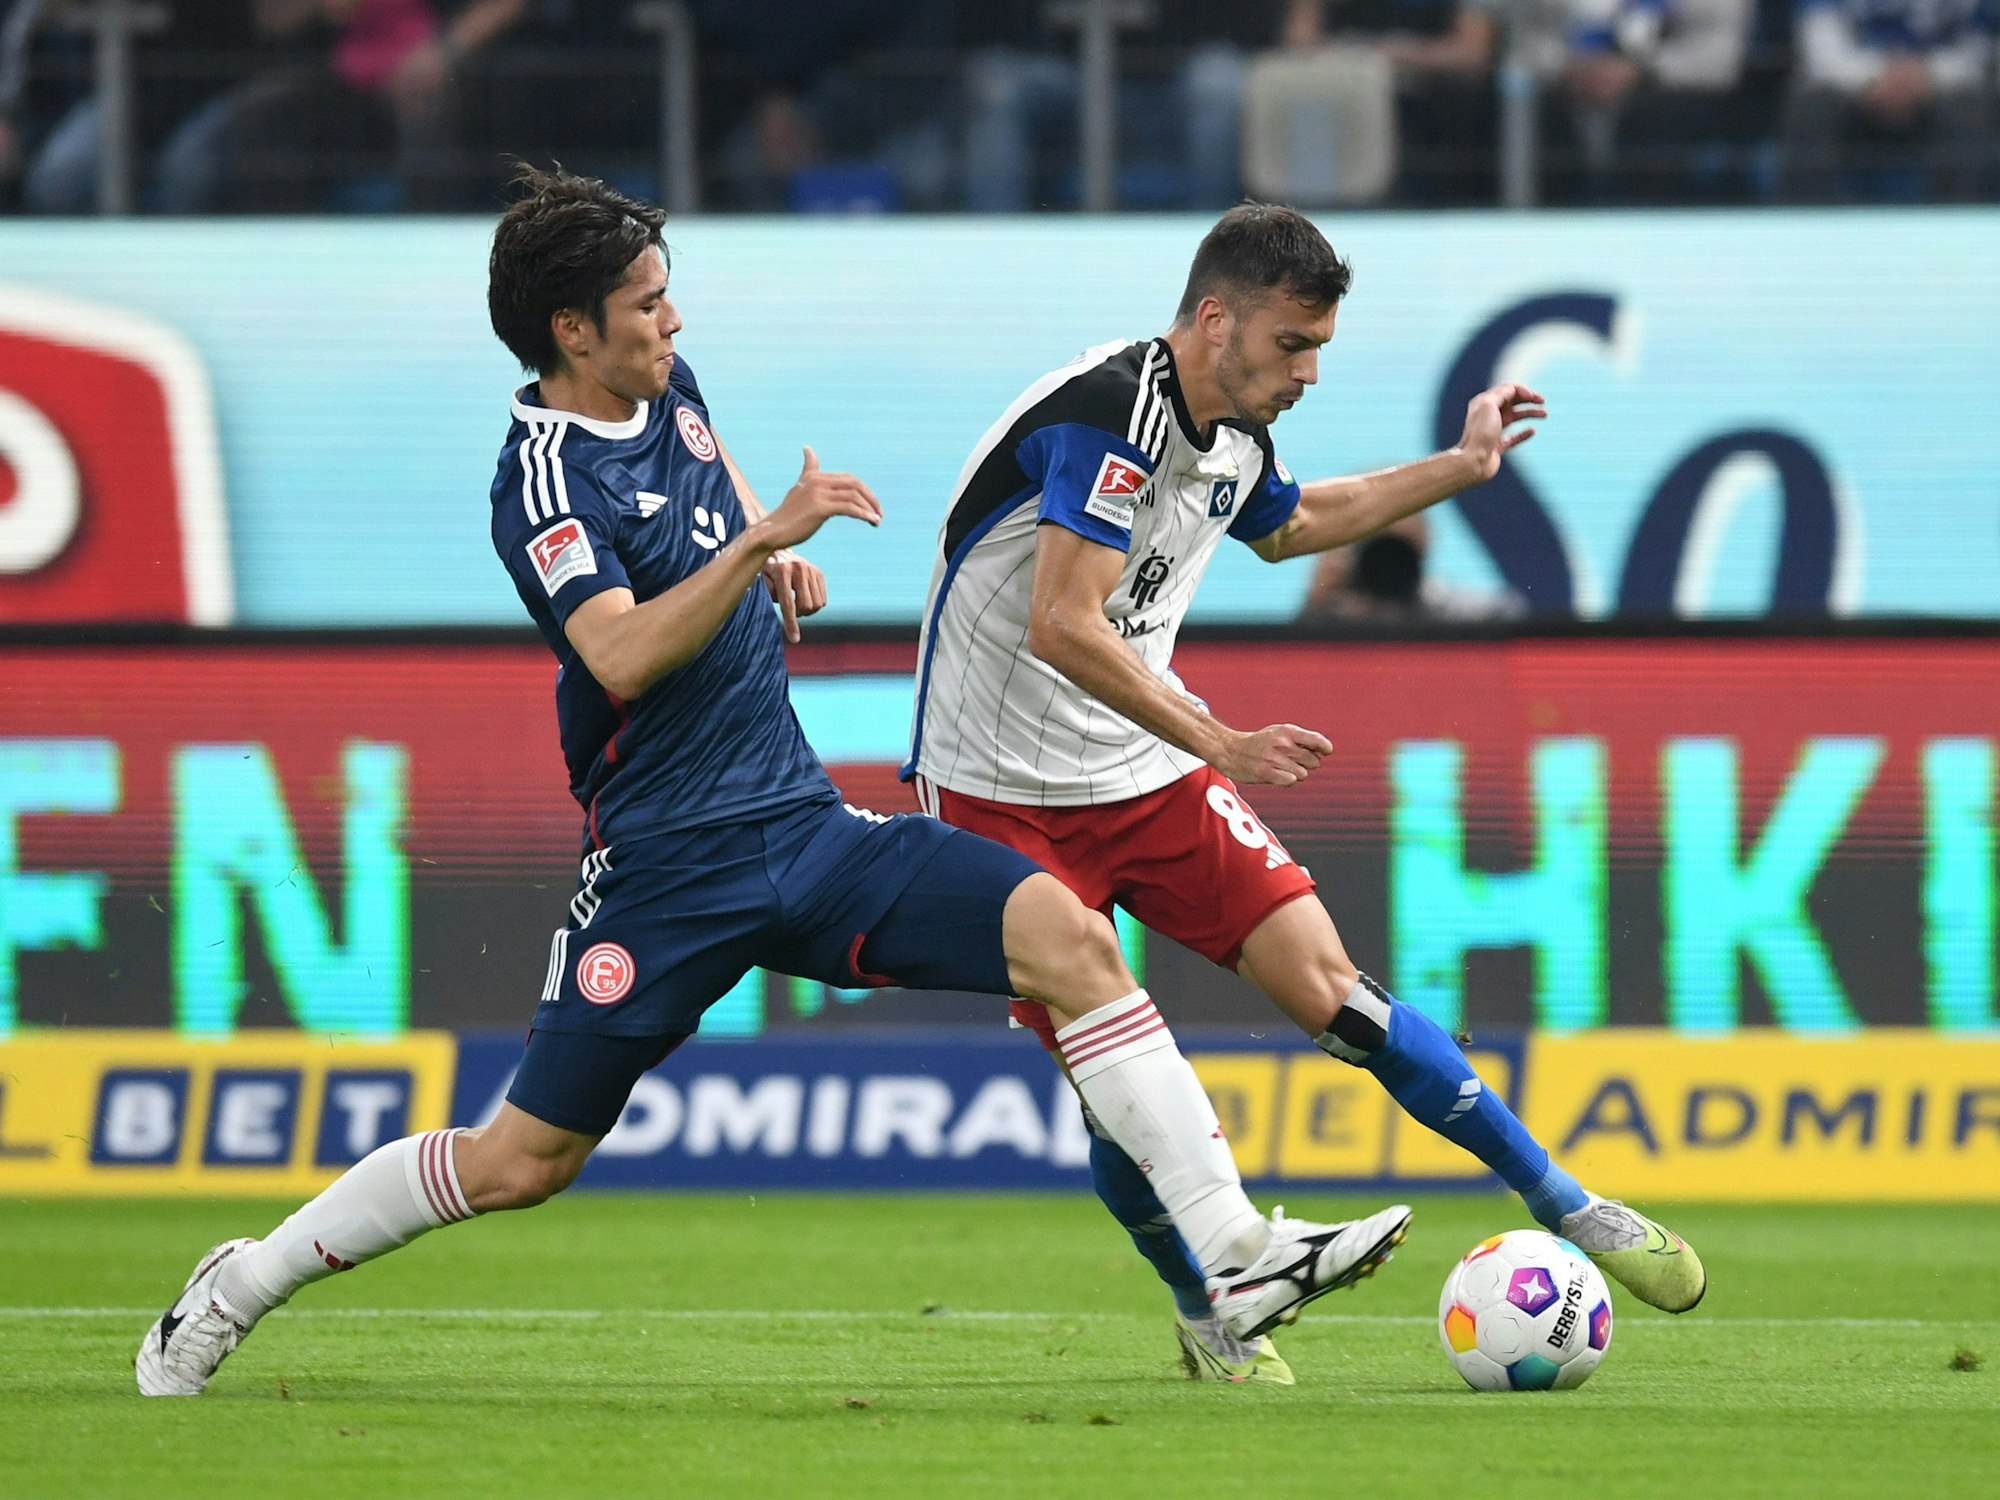 Hamburgs Laszlo Benes (r.) und Fortuna Düsseldorfs Ao Tanaka kämpfen um den Ball.